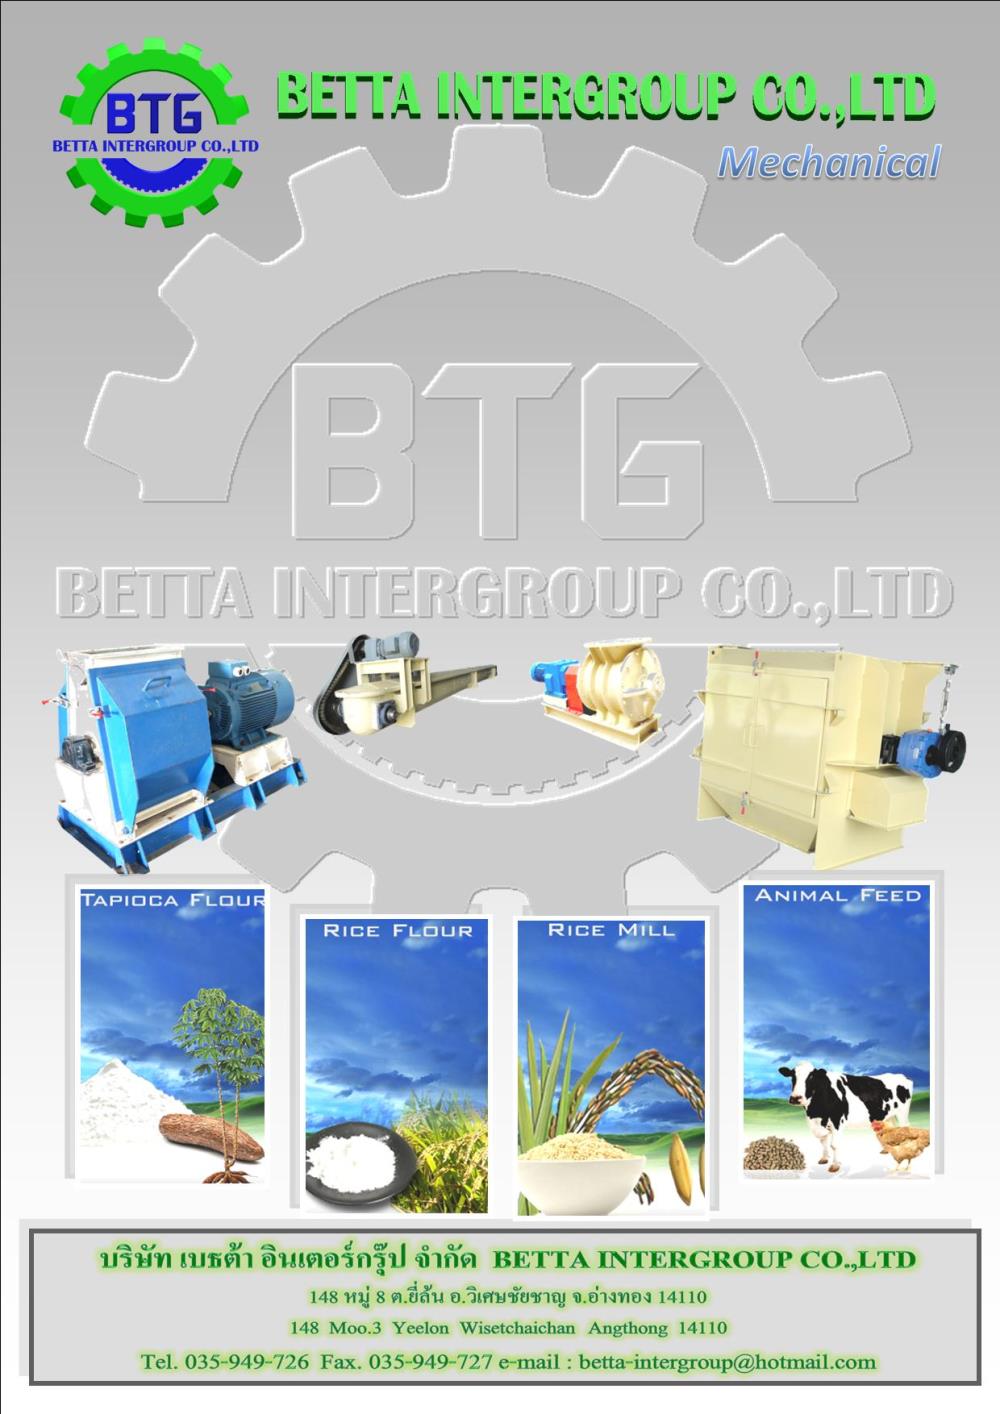 ฺBETTA INTERGROUP Co.,LTD, บริษัท เบธต้า อินเตอร์กรุ๊ป จำกัด